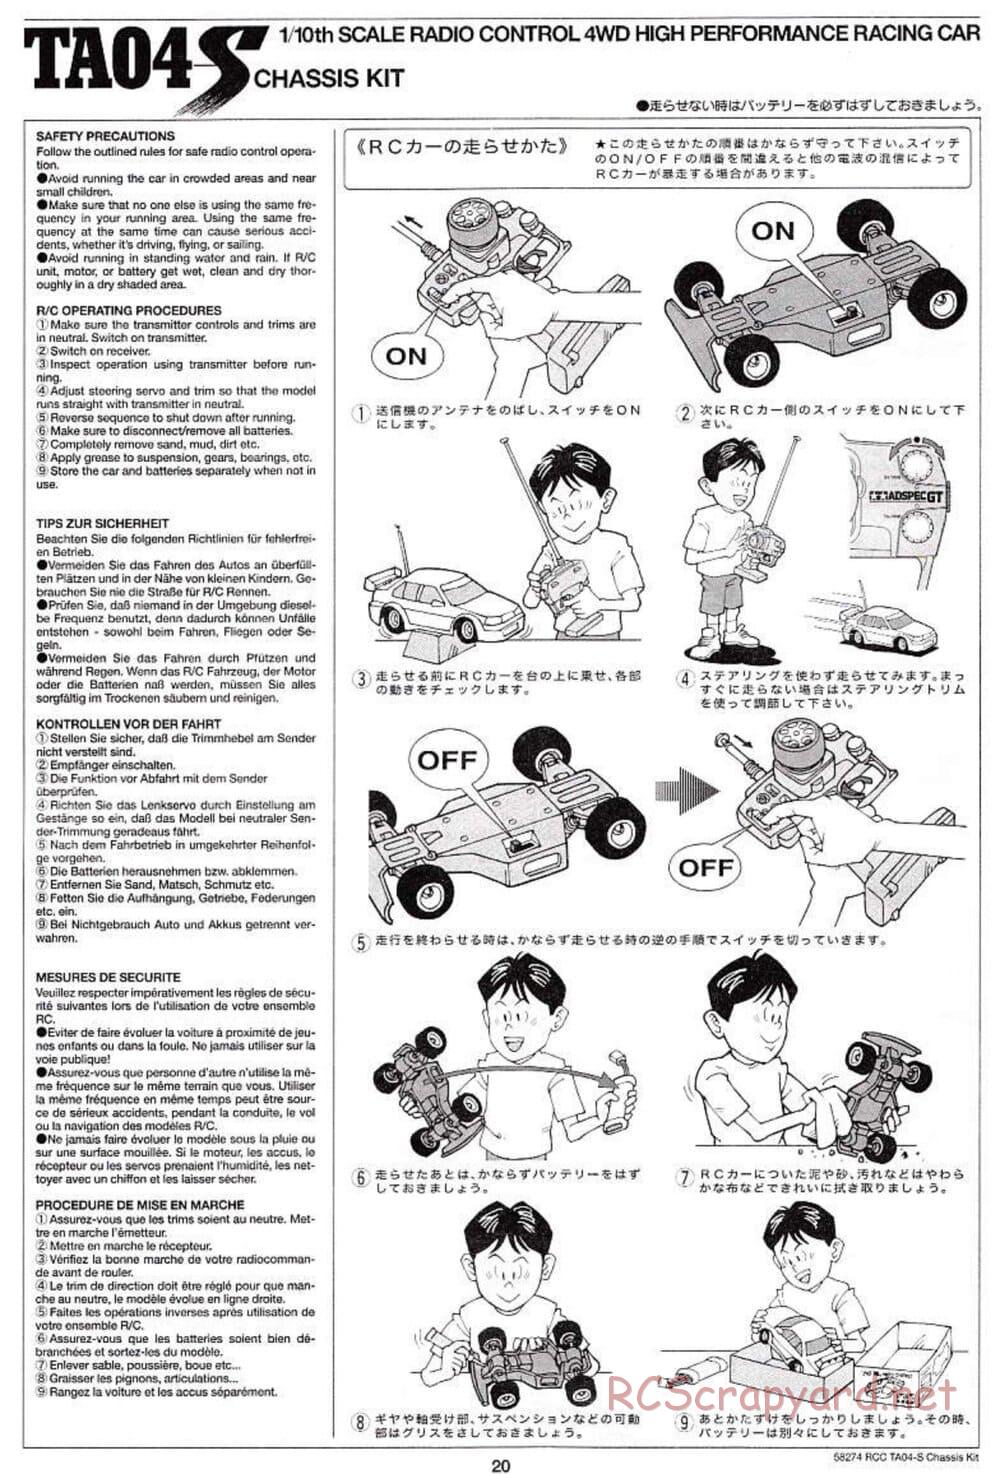 Tamiya - TA-04S Chassis - Manual - Page 20